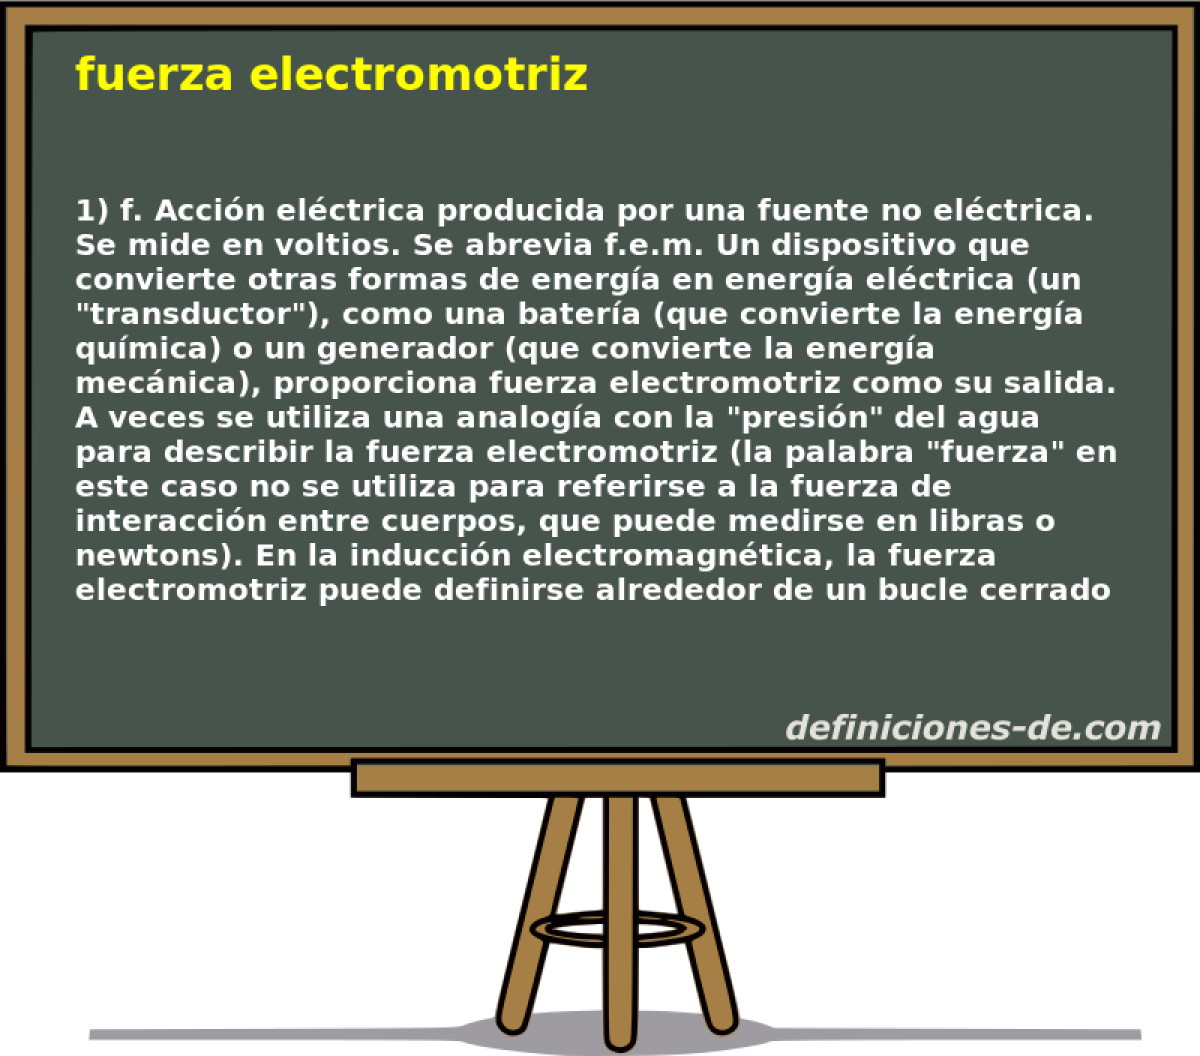 fuerza electromotriz 